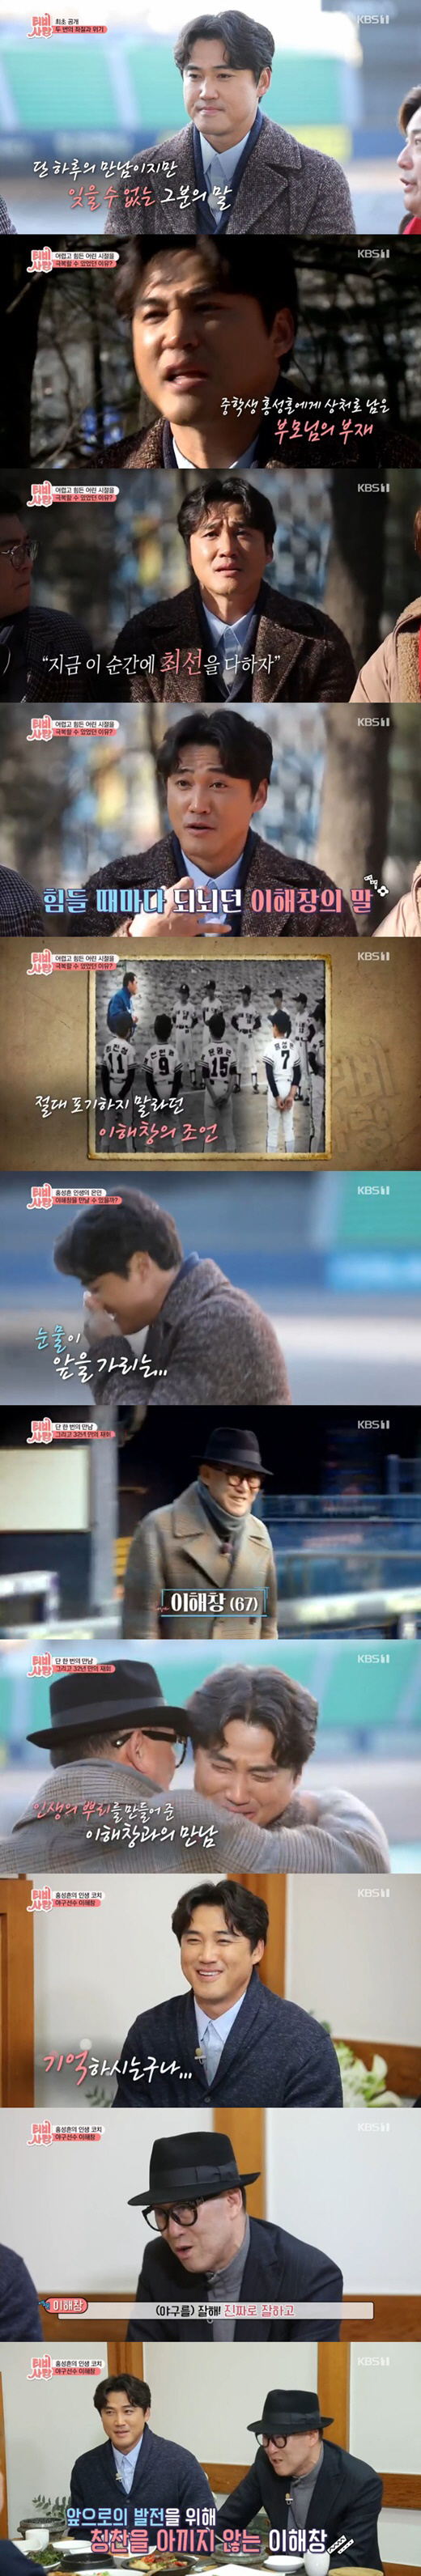 KBS 2TV 방송캡처